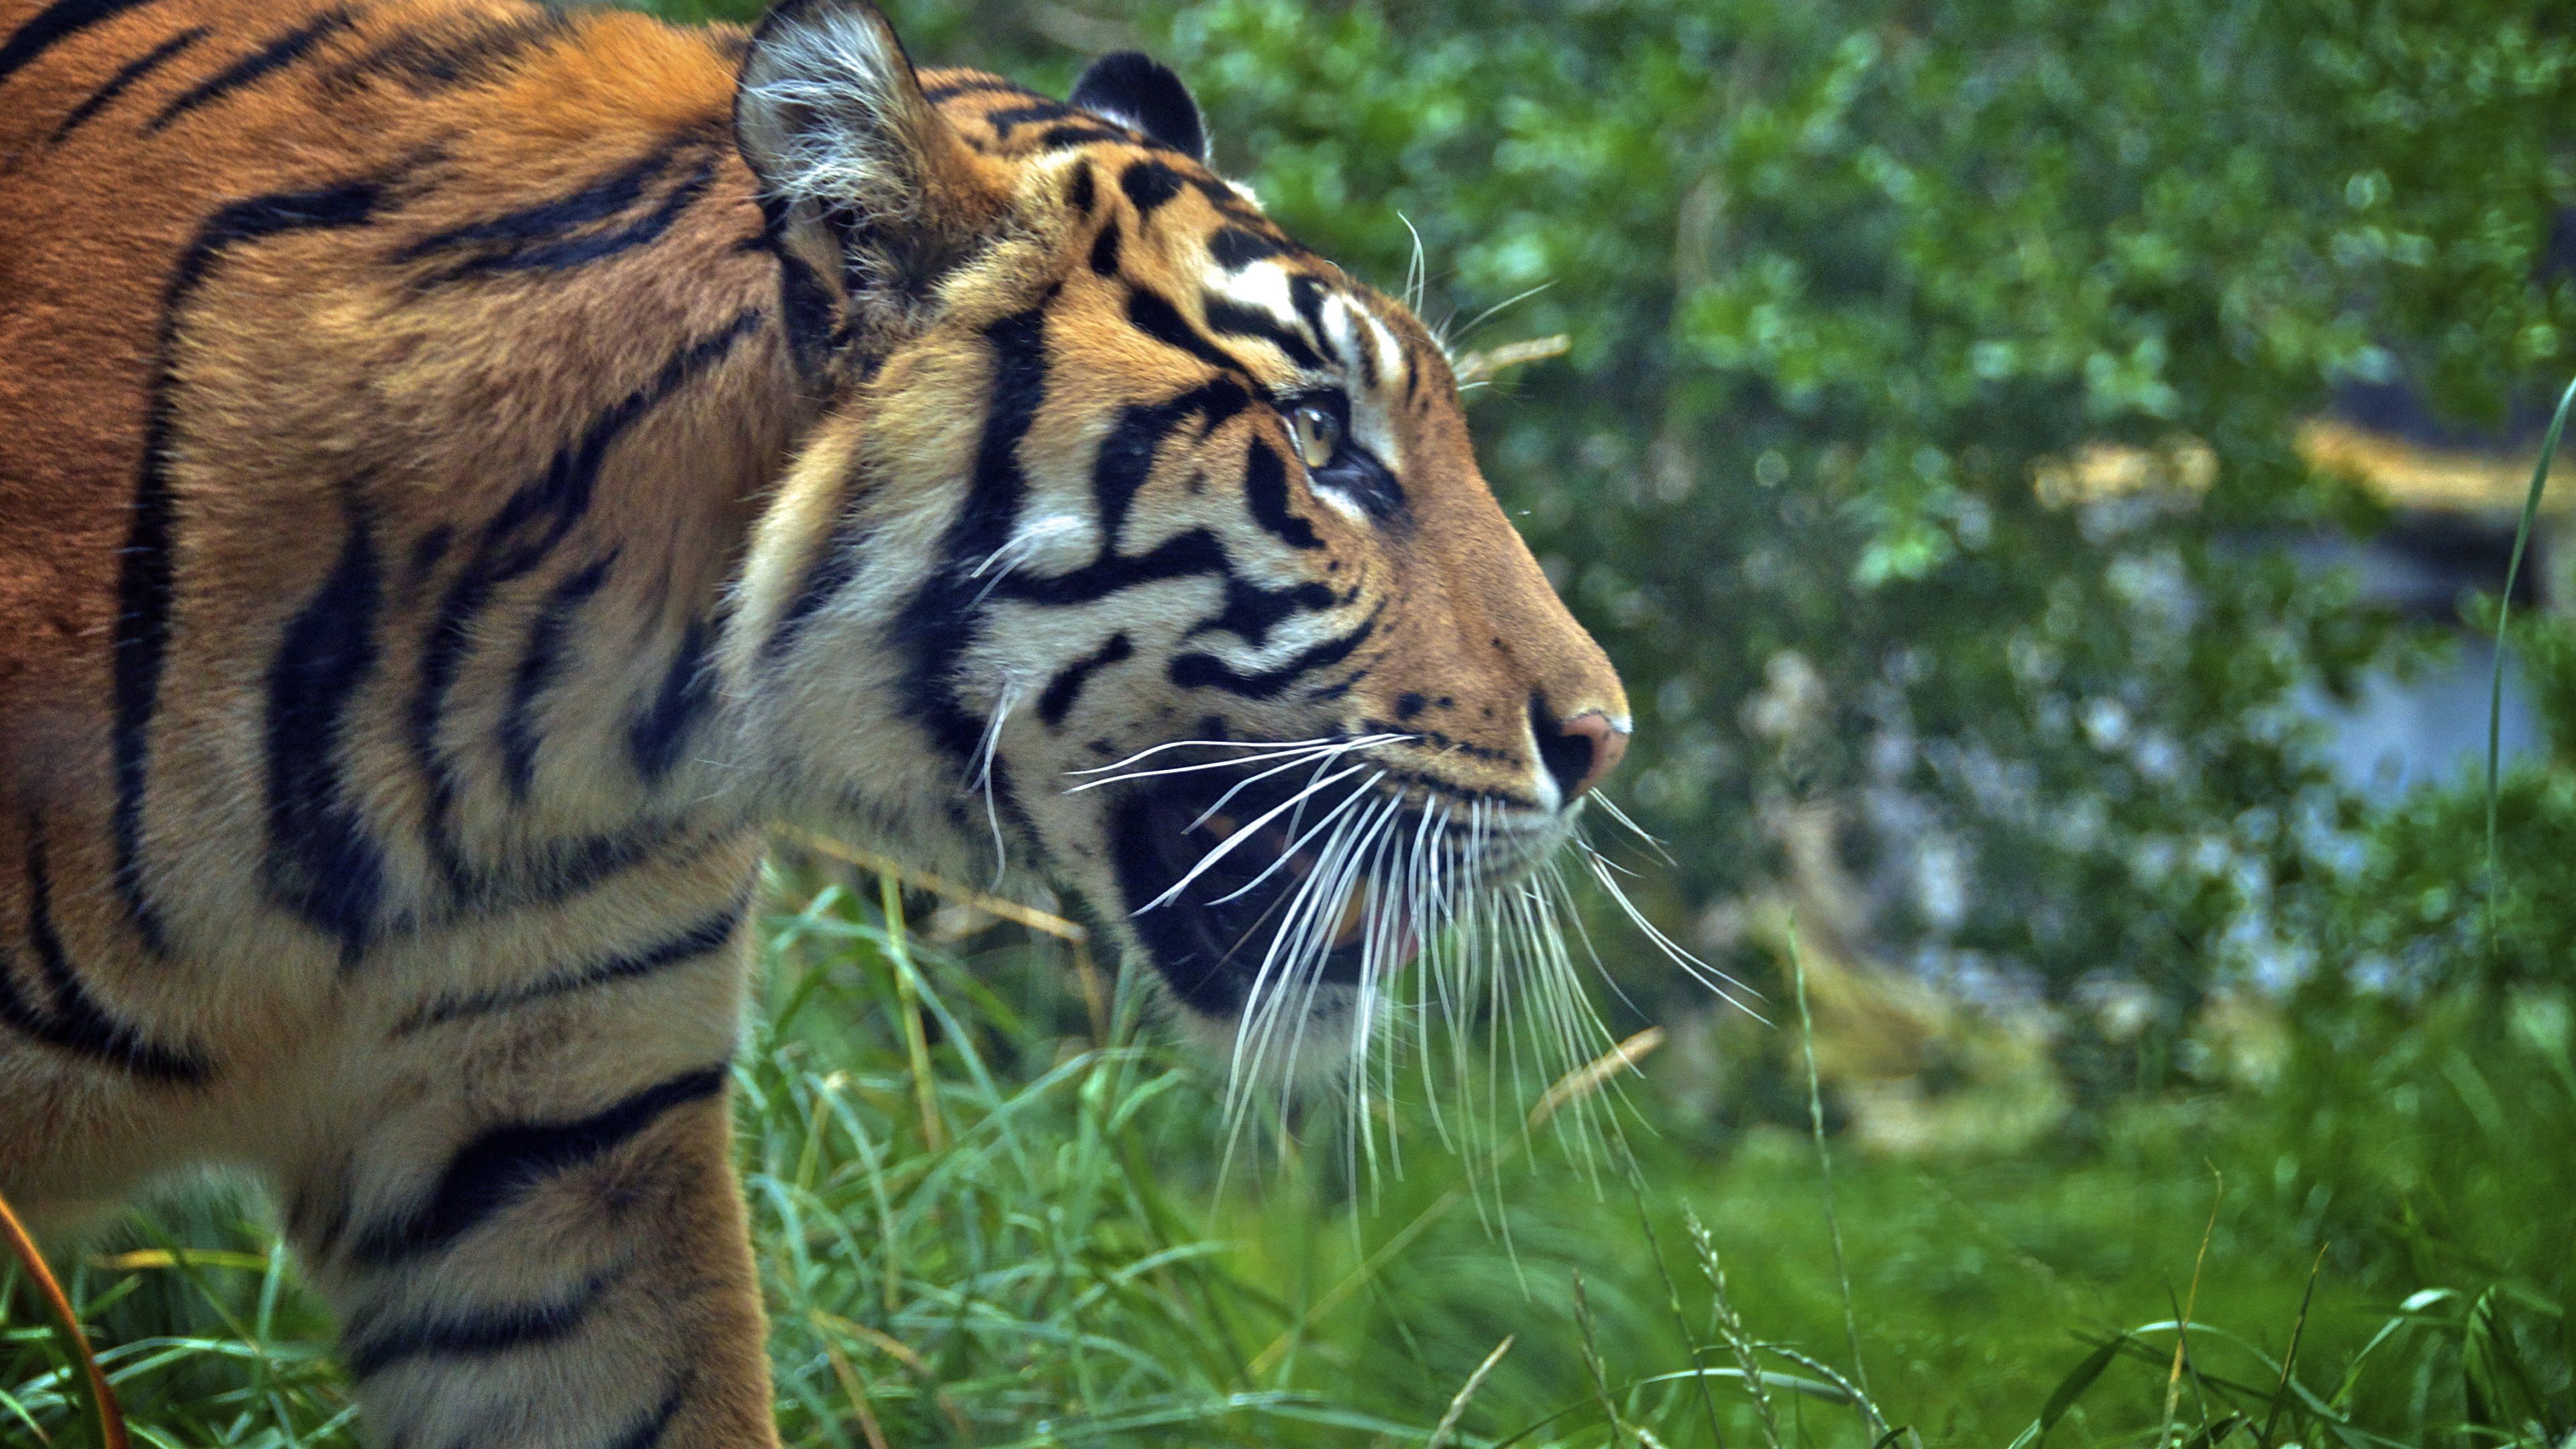 Sumatran Tiger at Zoo HD Wallpaper · 4K